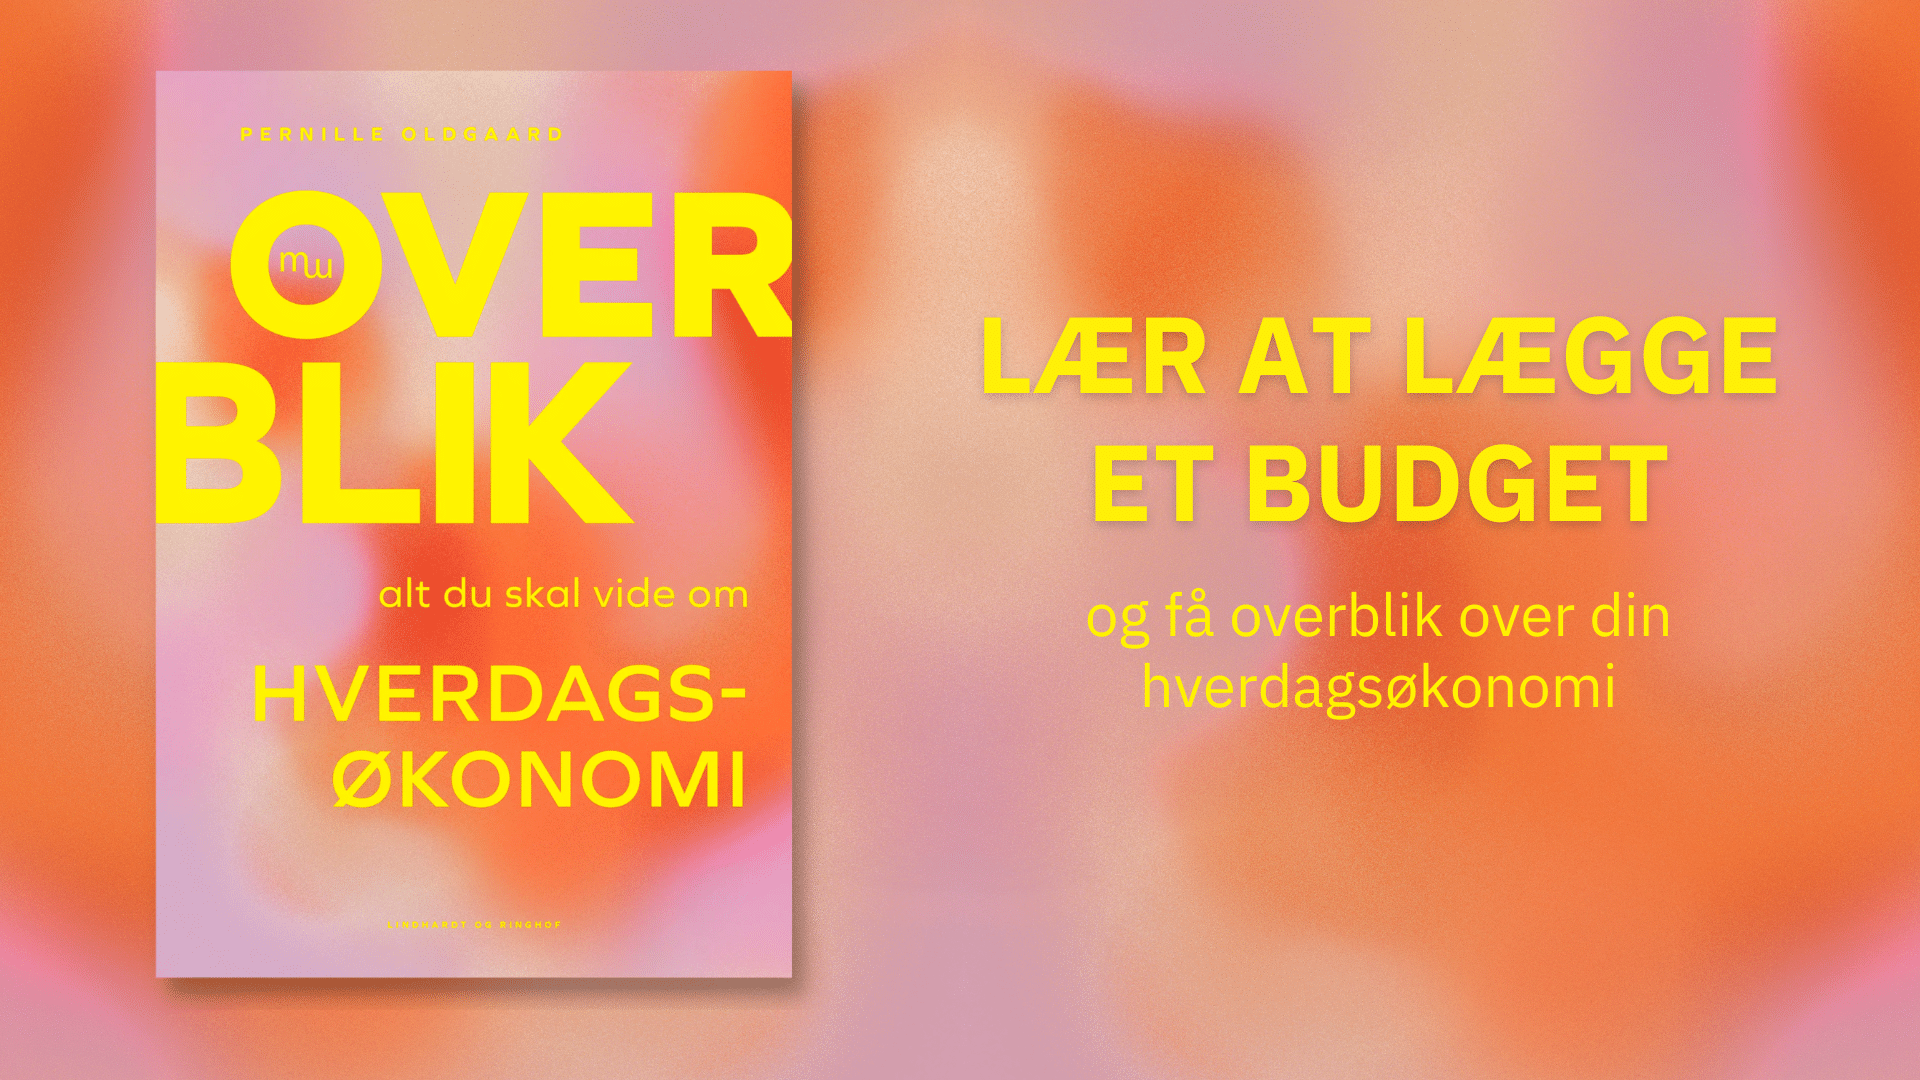 Har du styr på budgettet? Lær at lægge et realistisk og overskueligt budget med den nye bog Overblik af finansrådgiver Pernille Oldgaard.